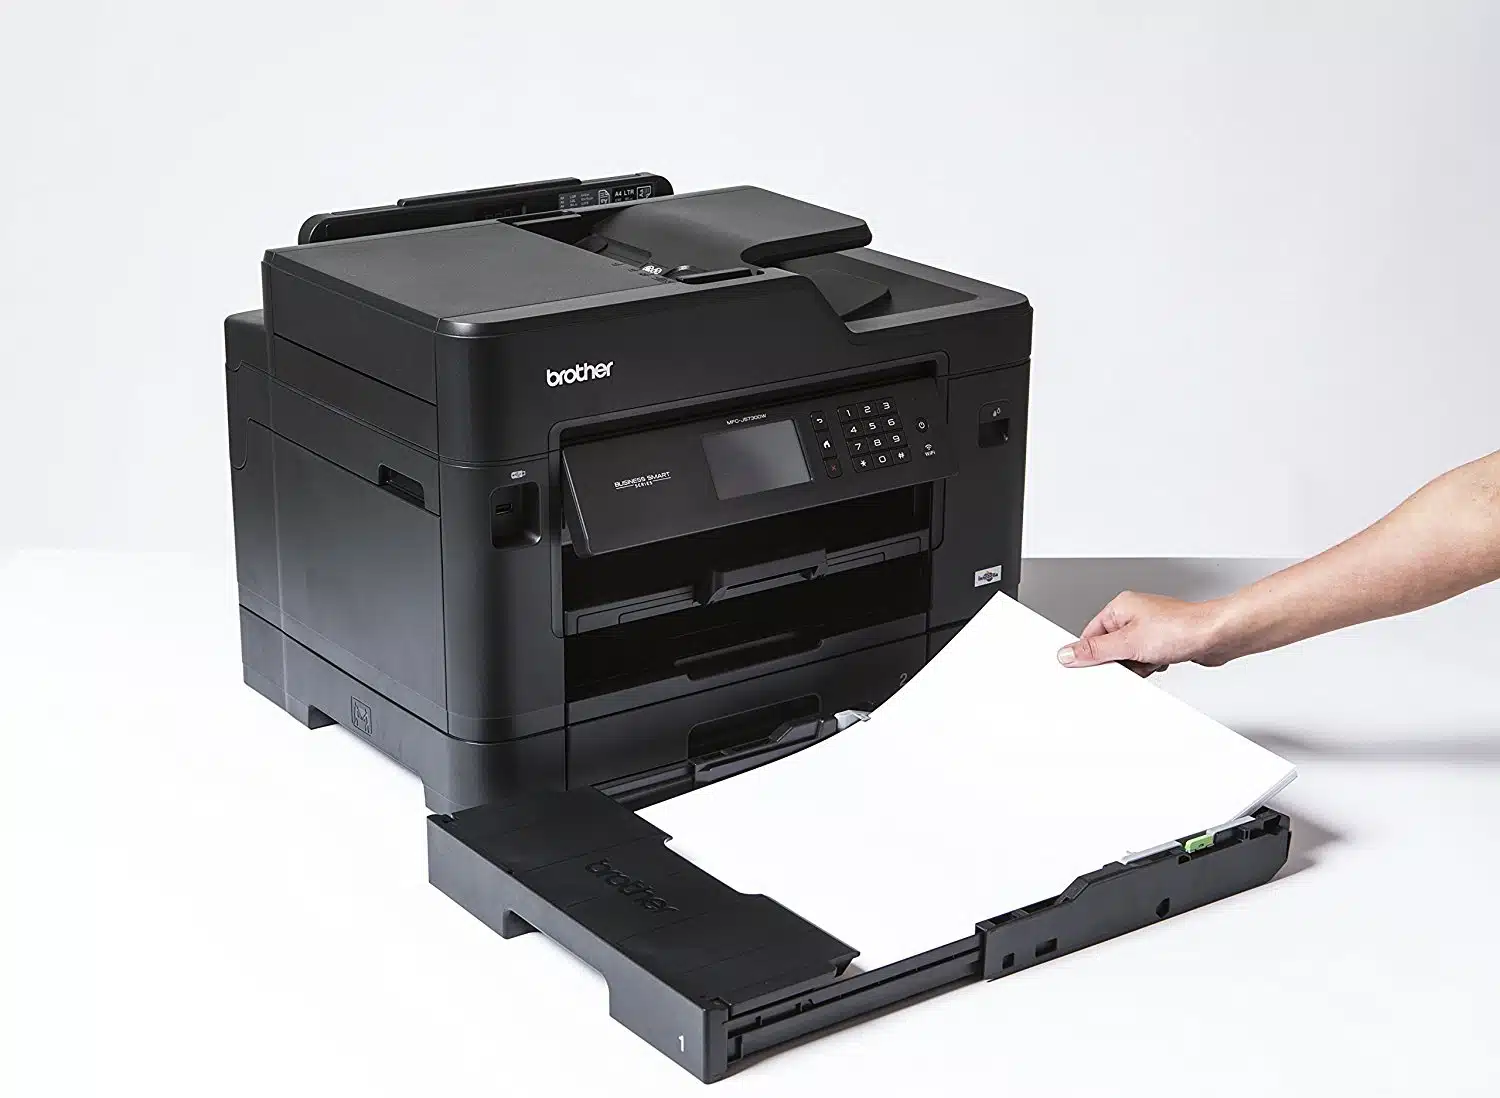 Imprimer avec une imprimante à laser